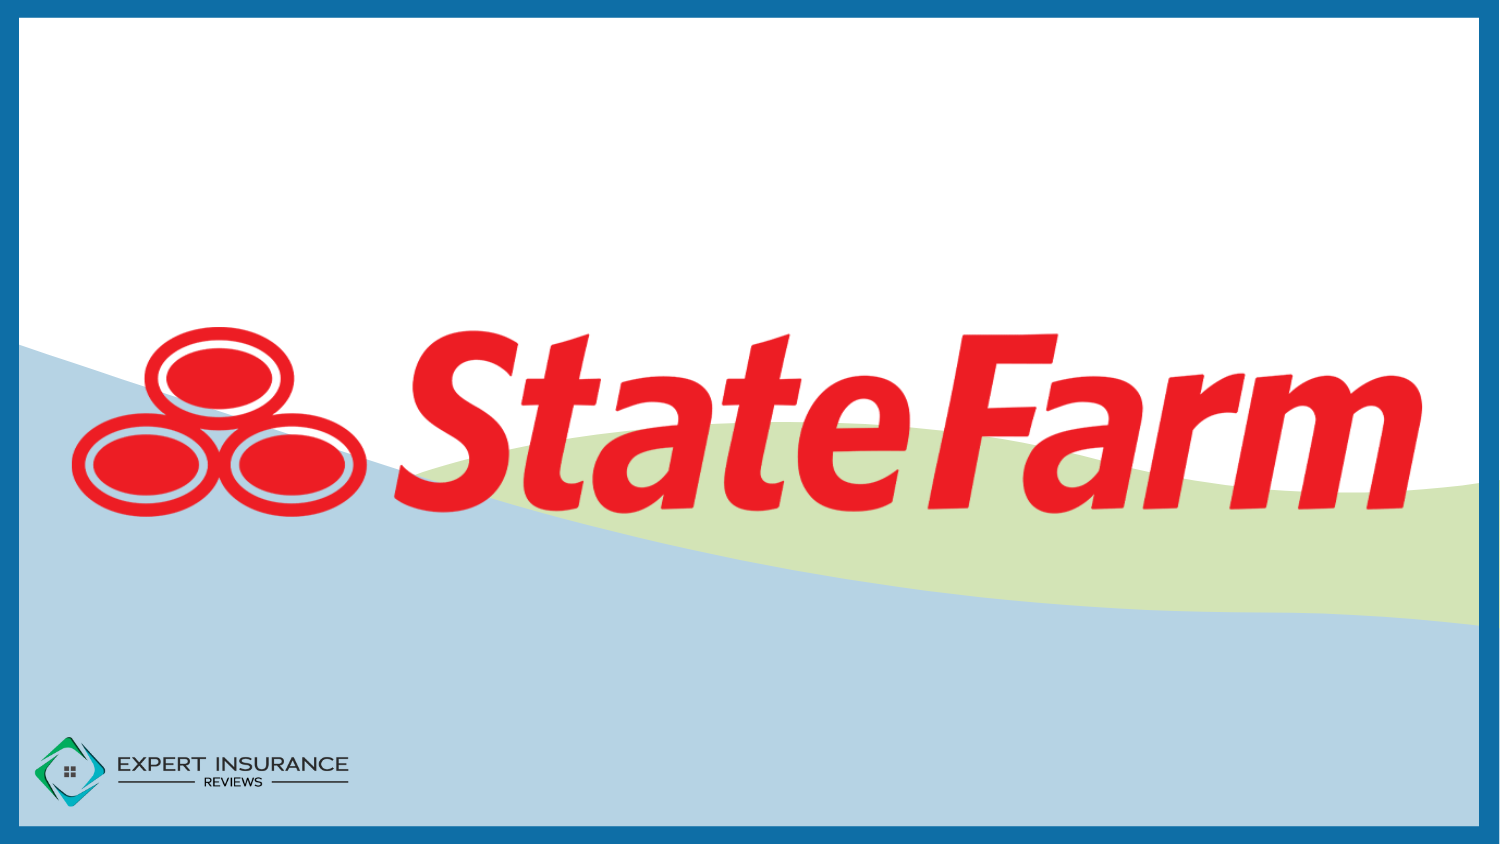 State Farm: Best Home Insurance for Seniors